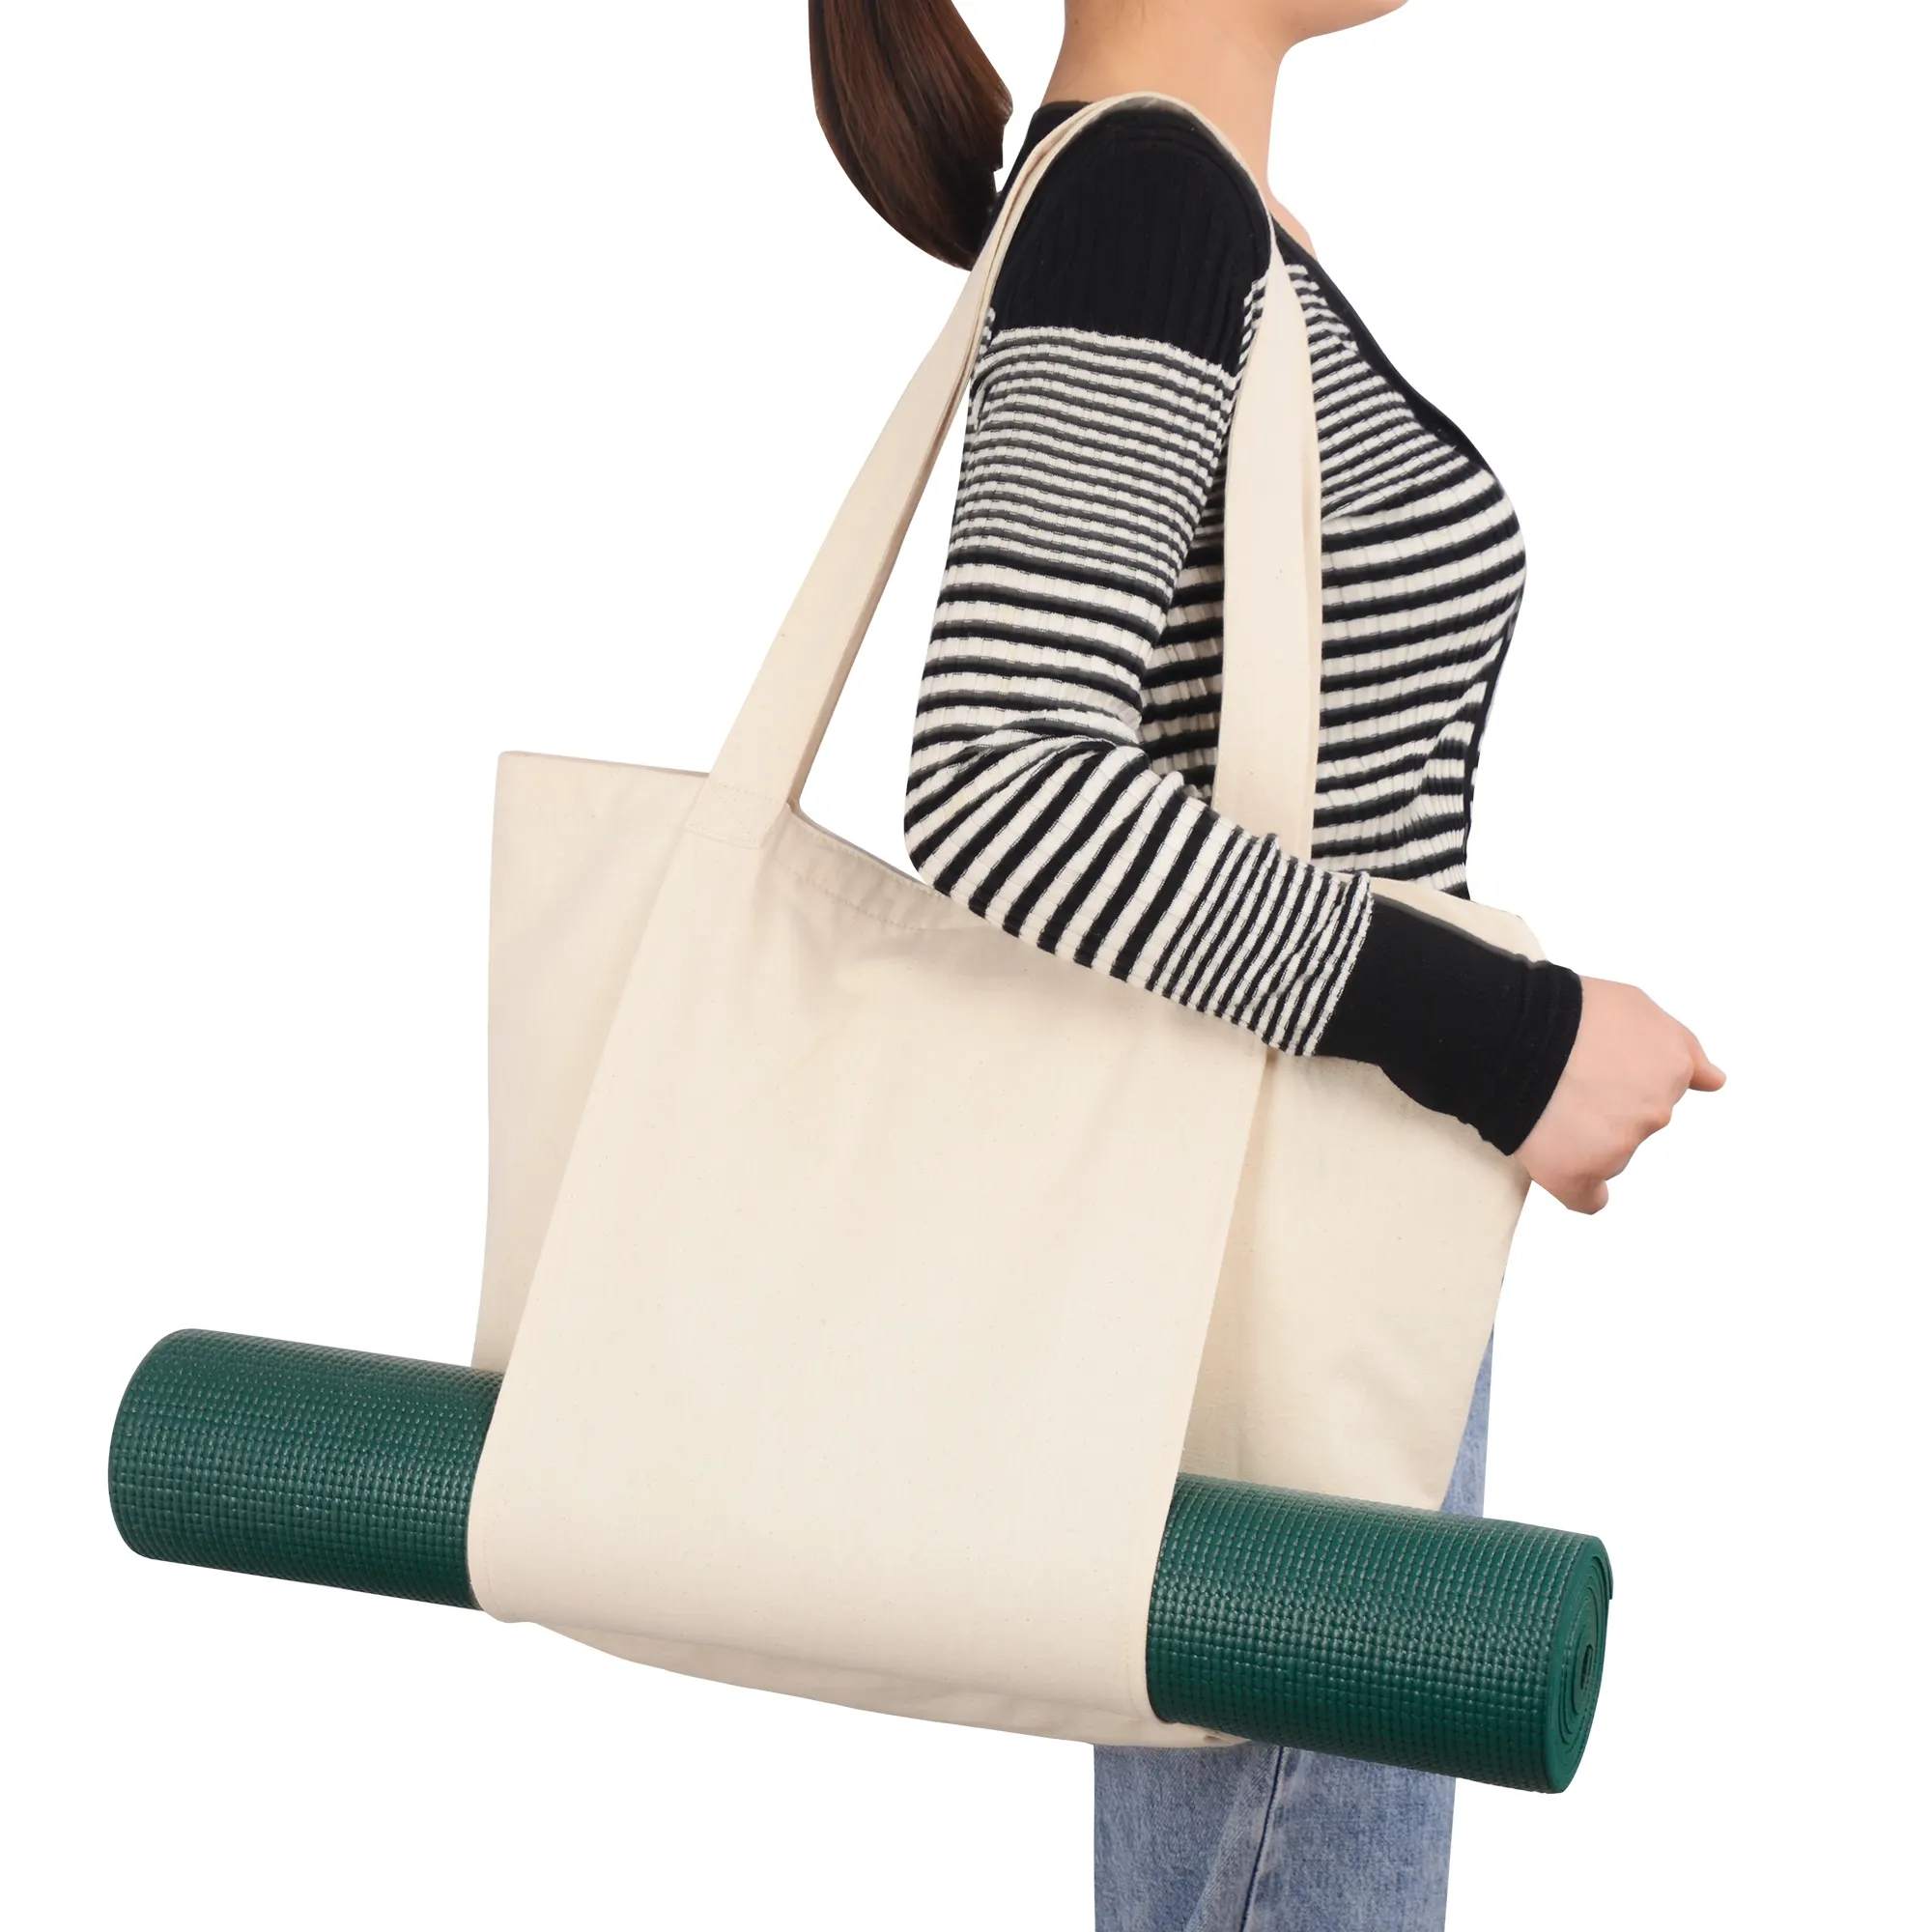 Große Yoga matte Taschen und Träger Passend für alle Ihre Sachen Yoga Zubehör Fitness studio Umhängetasche Baumwolle Leinwand Yoga Tragetaschen